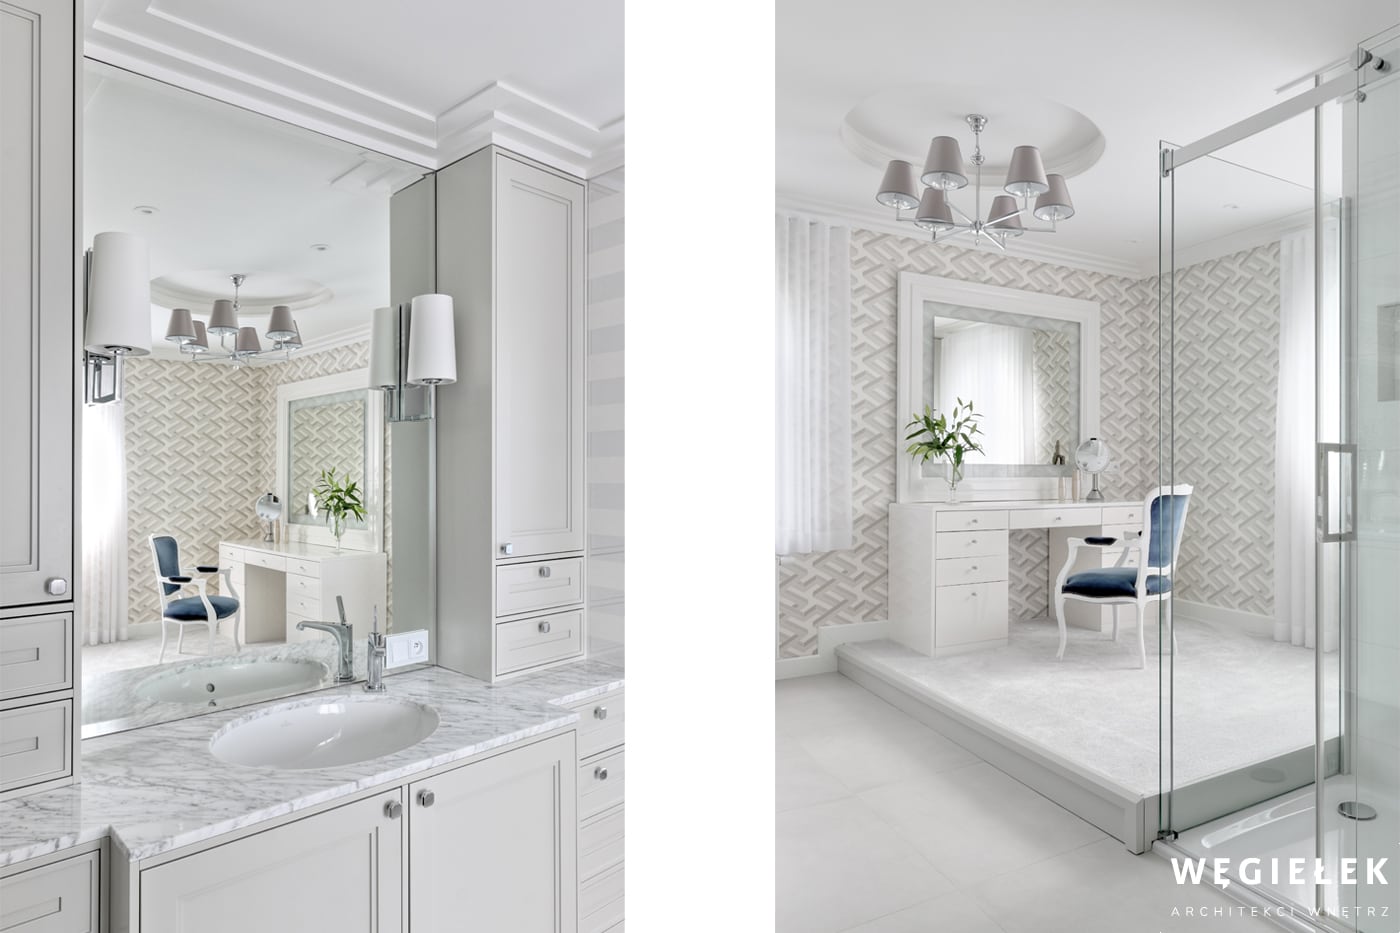 Pokój kąpielowy stworzony przez projektantów wnętrz, to wyjątkowa ozdoba domu. Jego częścią jest toaletka z lustrem, przy którym może stroić się elegantka.